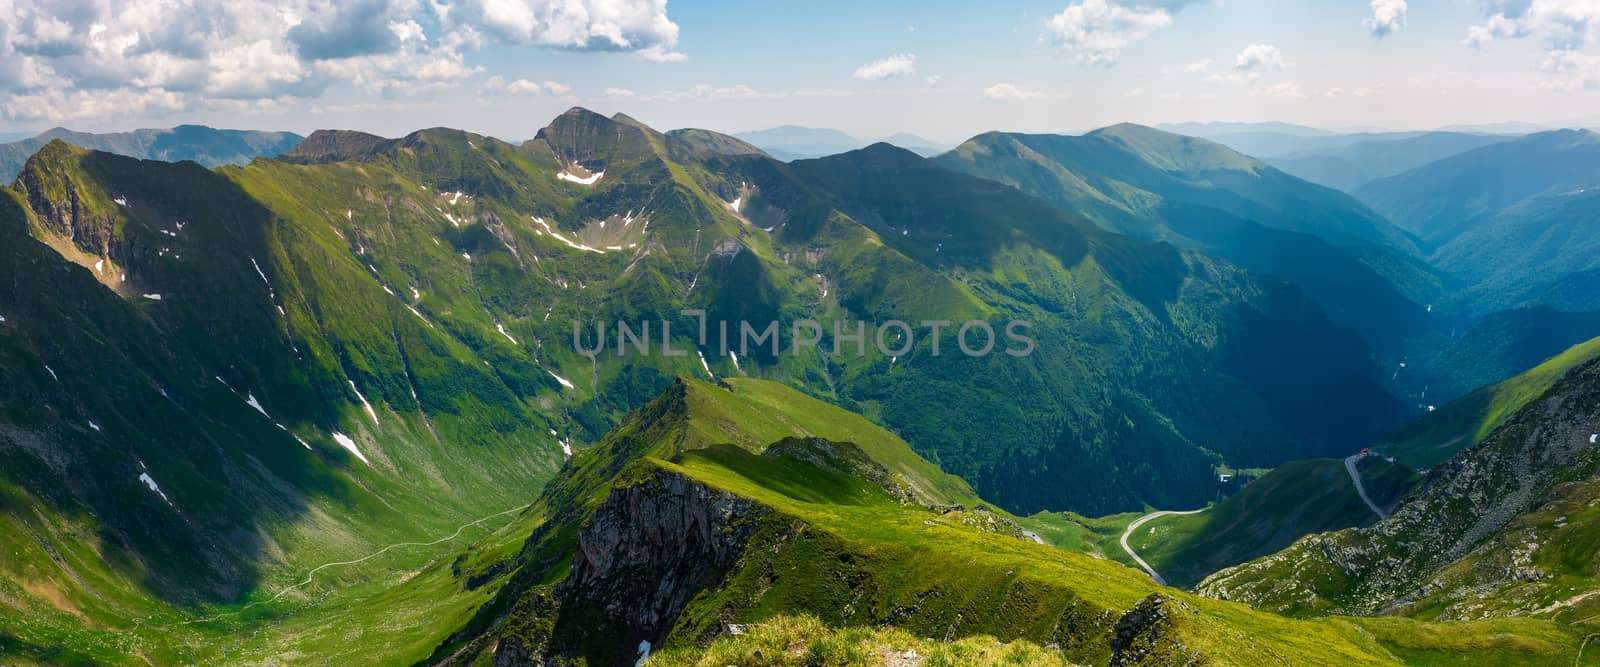 panorama of Fagarasan mountain ridge in summertime by Pellinni